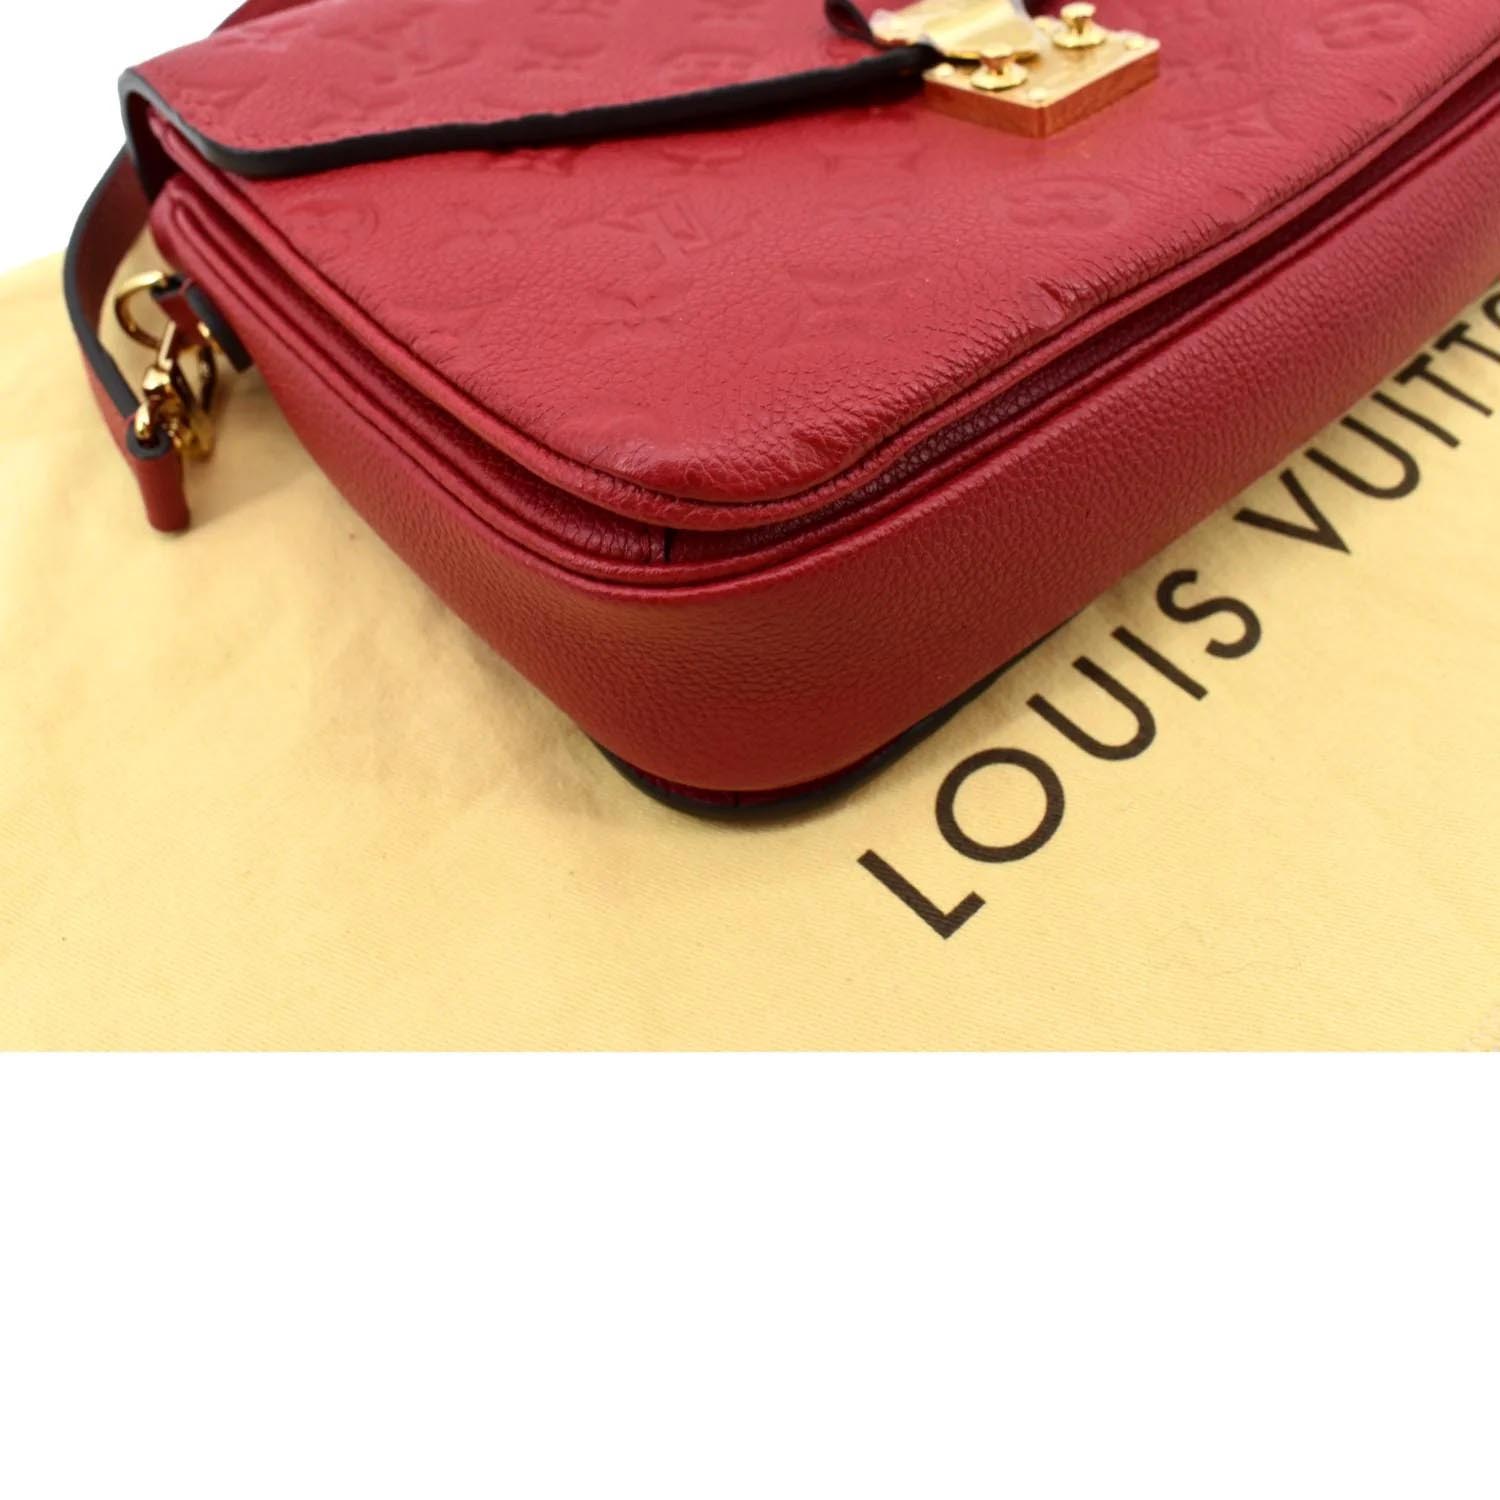 100% Original Louis Vuitton Pochette Metis Empreinte Scarlet